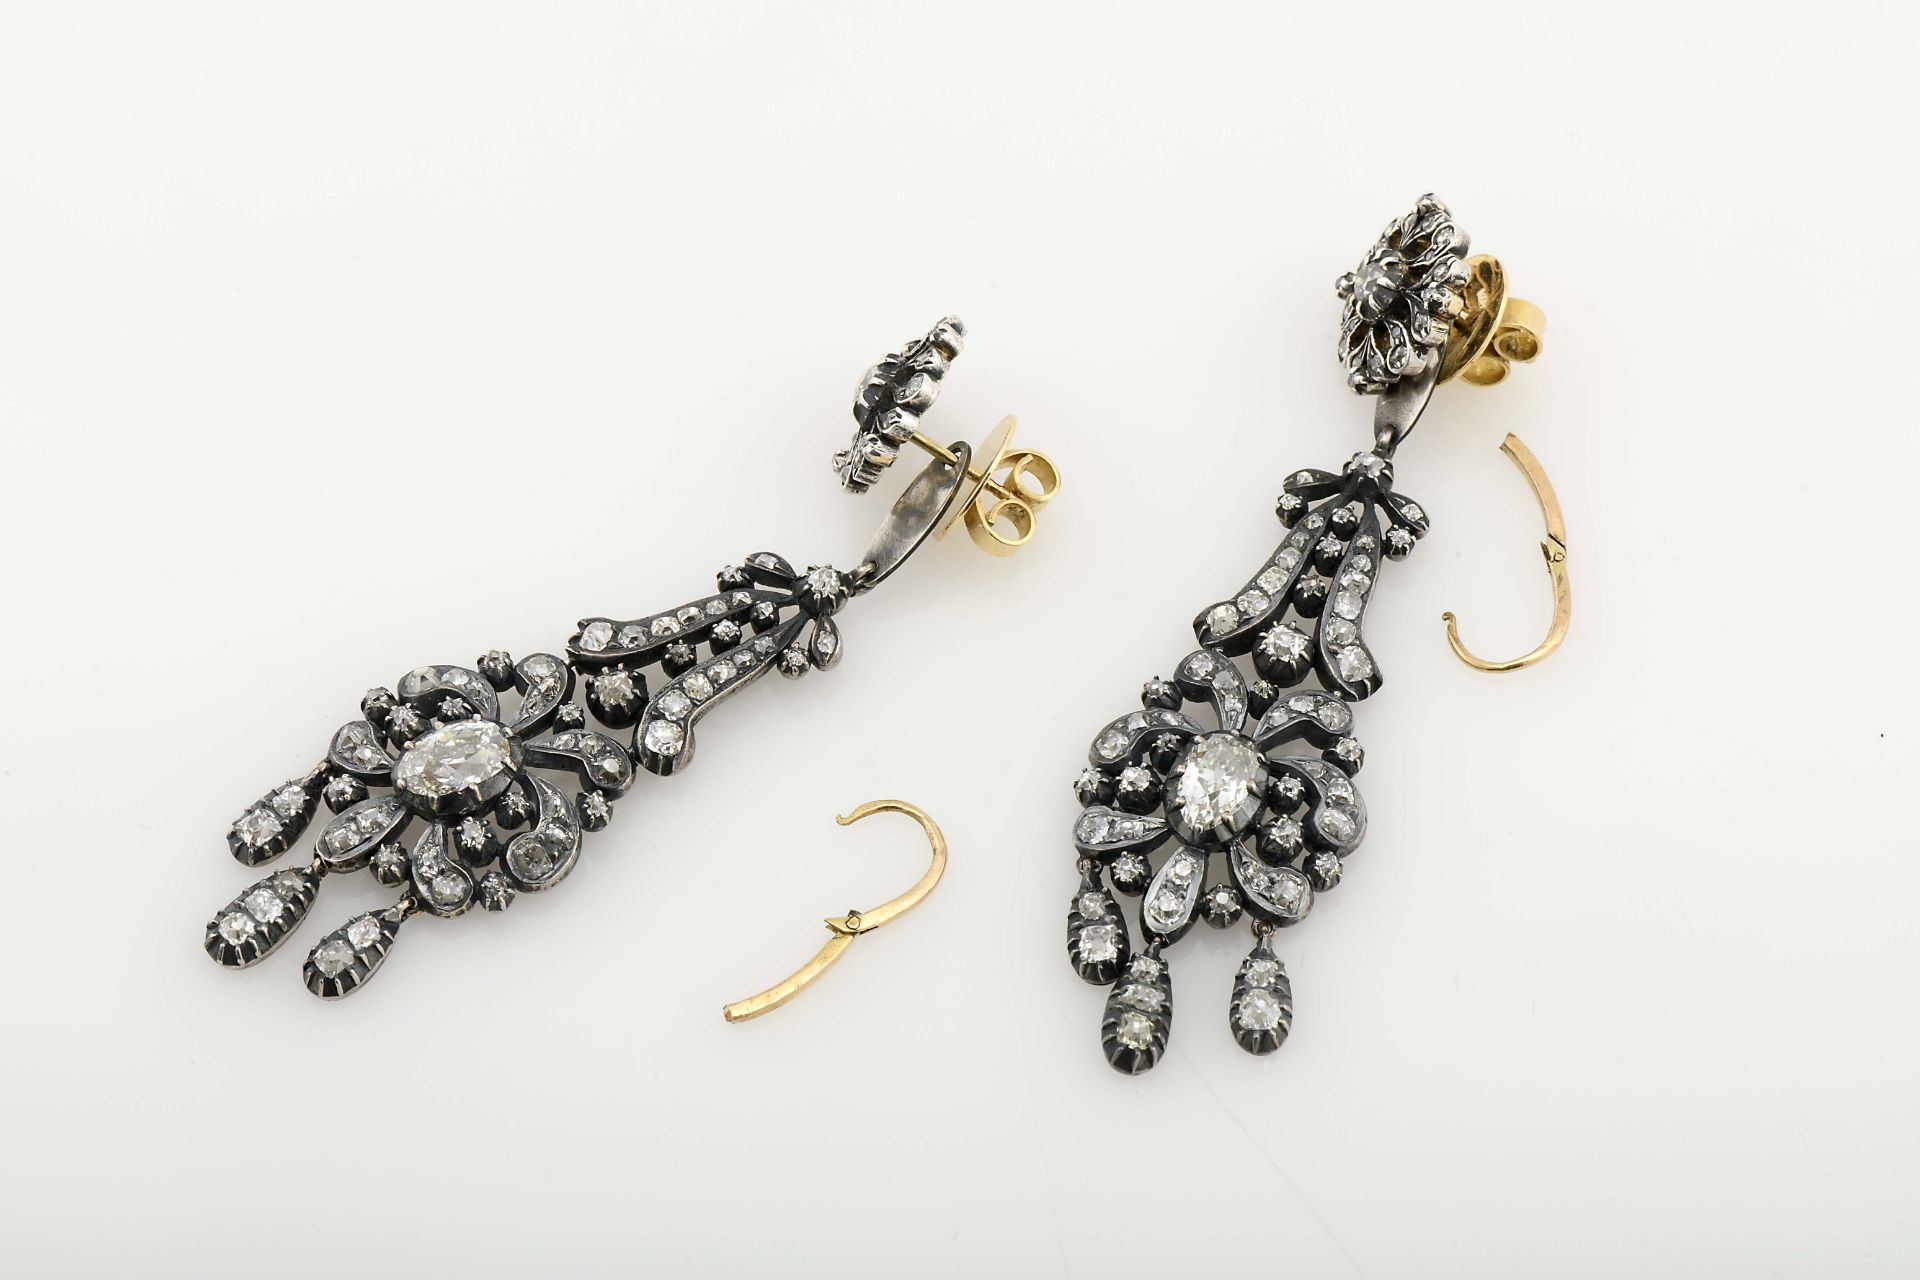 A pair of earrings - Bild 3 aus 3